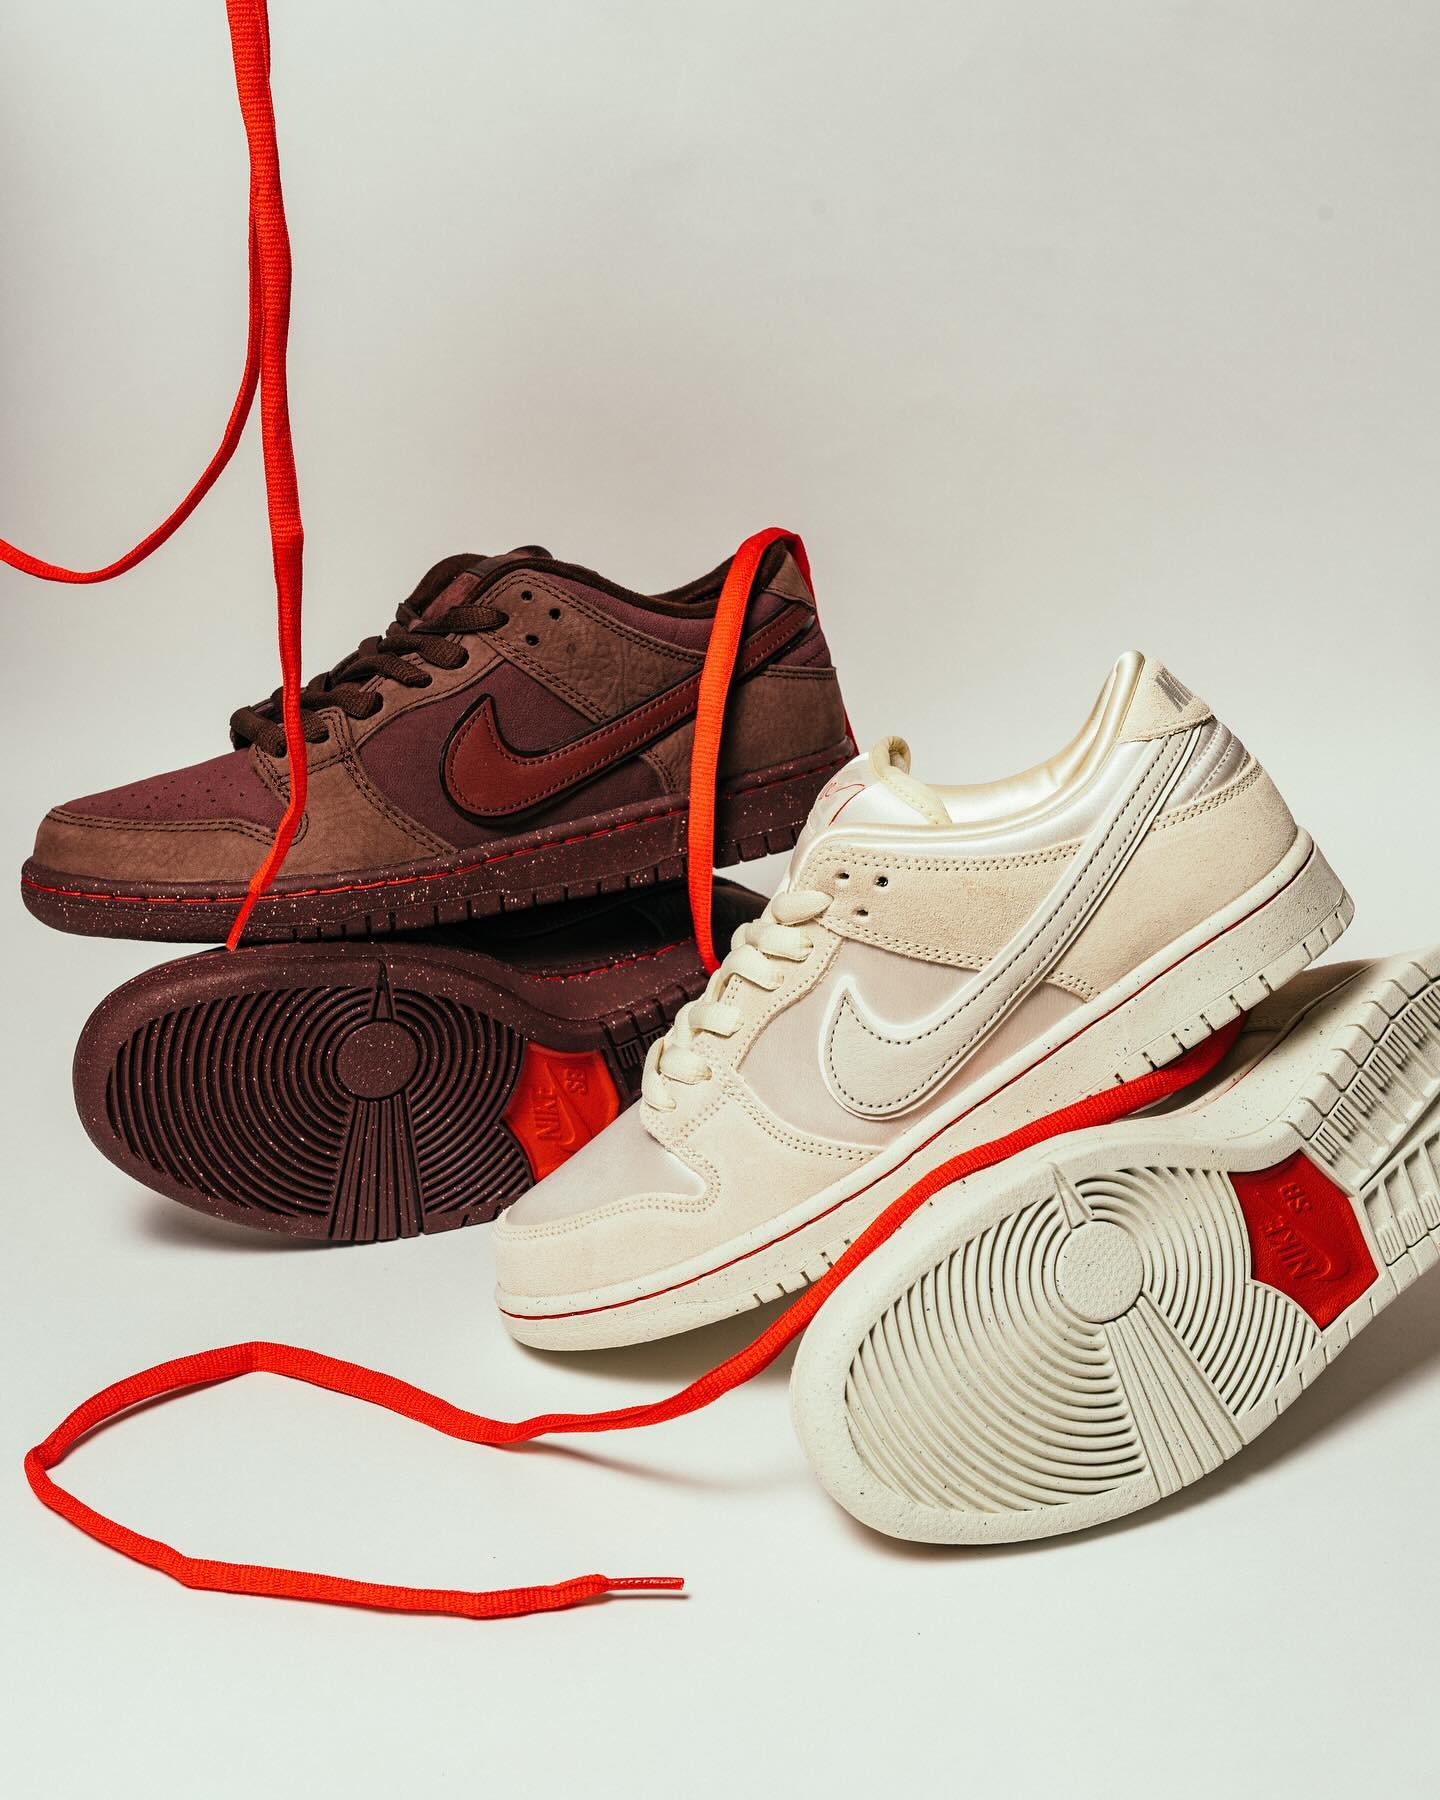 2月12日(月)本日発売Nike SB "City of Love" Collection運命の赤い糸で結ばれたバーガンディーとホワイトの対照的な美しさが交差するDunk Collectionが本日発売。パリの街からインスパイアされた対照的な2対のDunkが赤い糸で結ばれたスケートの歴史と未来の調和の物語を紡ぎます。※事前抽選は終了しております。※店舗抽選ご当選者のお引取り期間は2/18(日)迄となっております。※no overseas shipment. @kaisei_yamaguchi#cityoflove#nikesb@nikesbdj#instantskateshop#instantskateboards